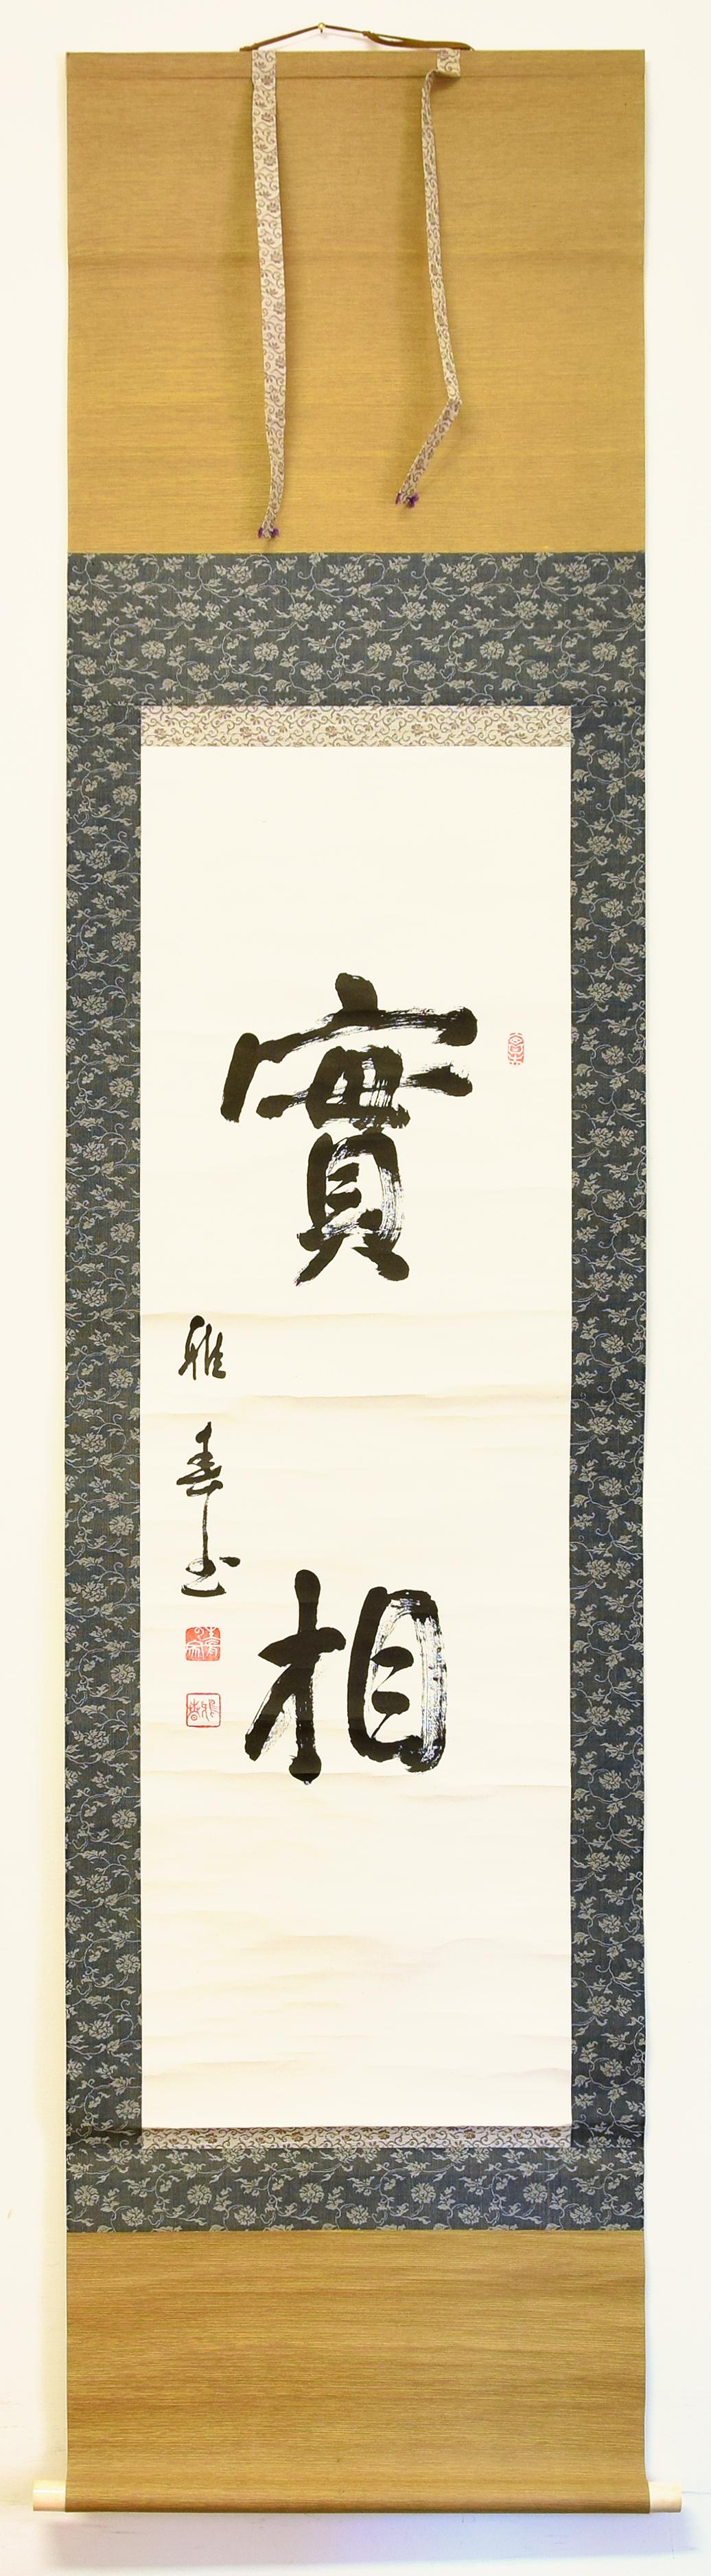 Bao Xiang est une magnifique calligraphie artistique à l'encre de Chine sur papier Xuan réalisée par un artiste chinois communément appelé Ya Chun au début des années 1900.

La signature de l'artiste apparaît à gauche à l'encre noire. En dessous, le